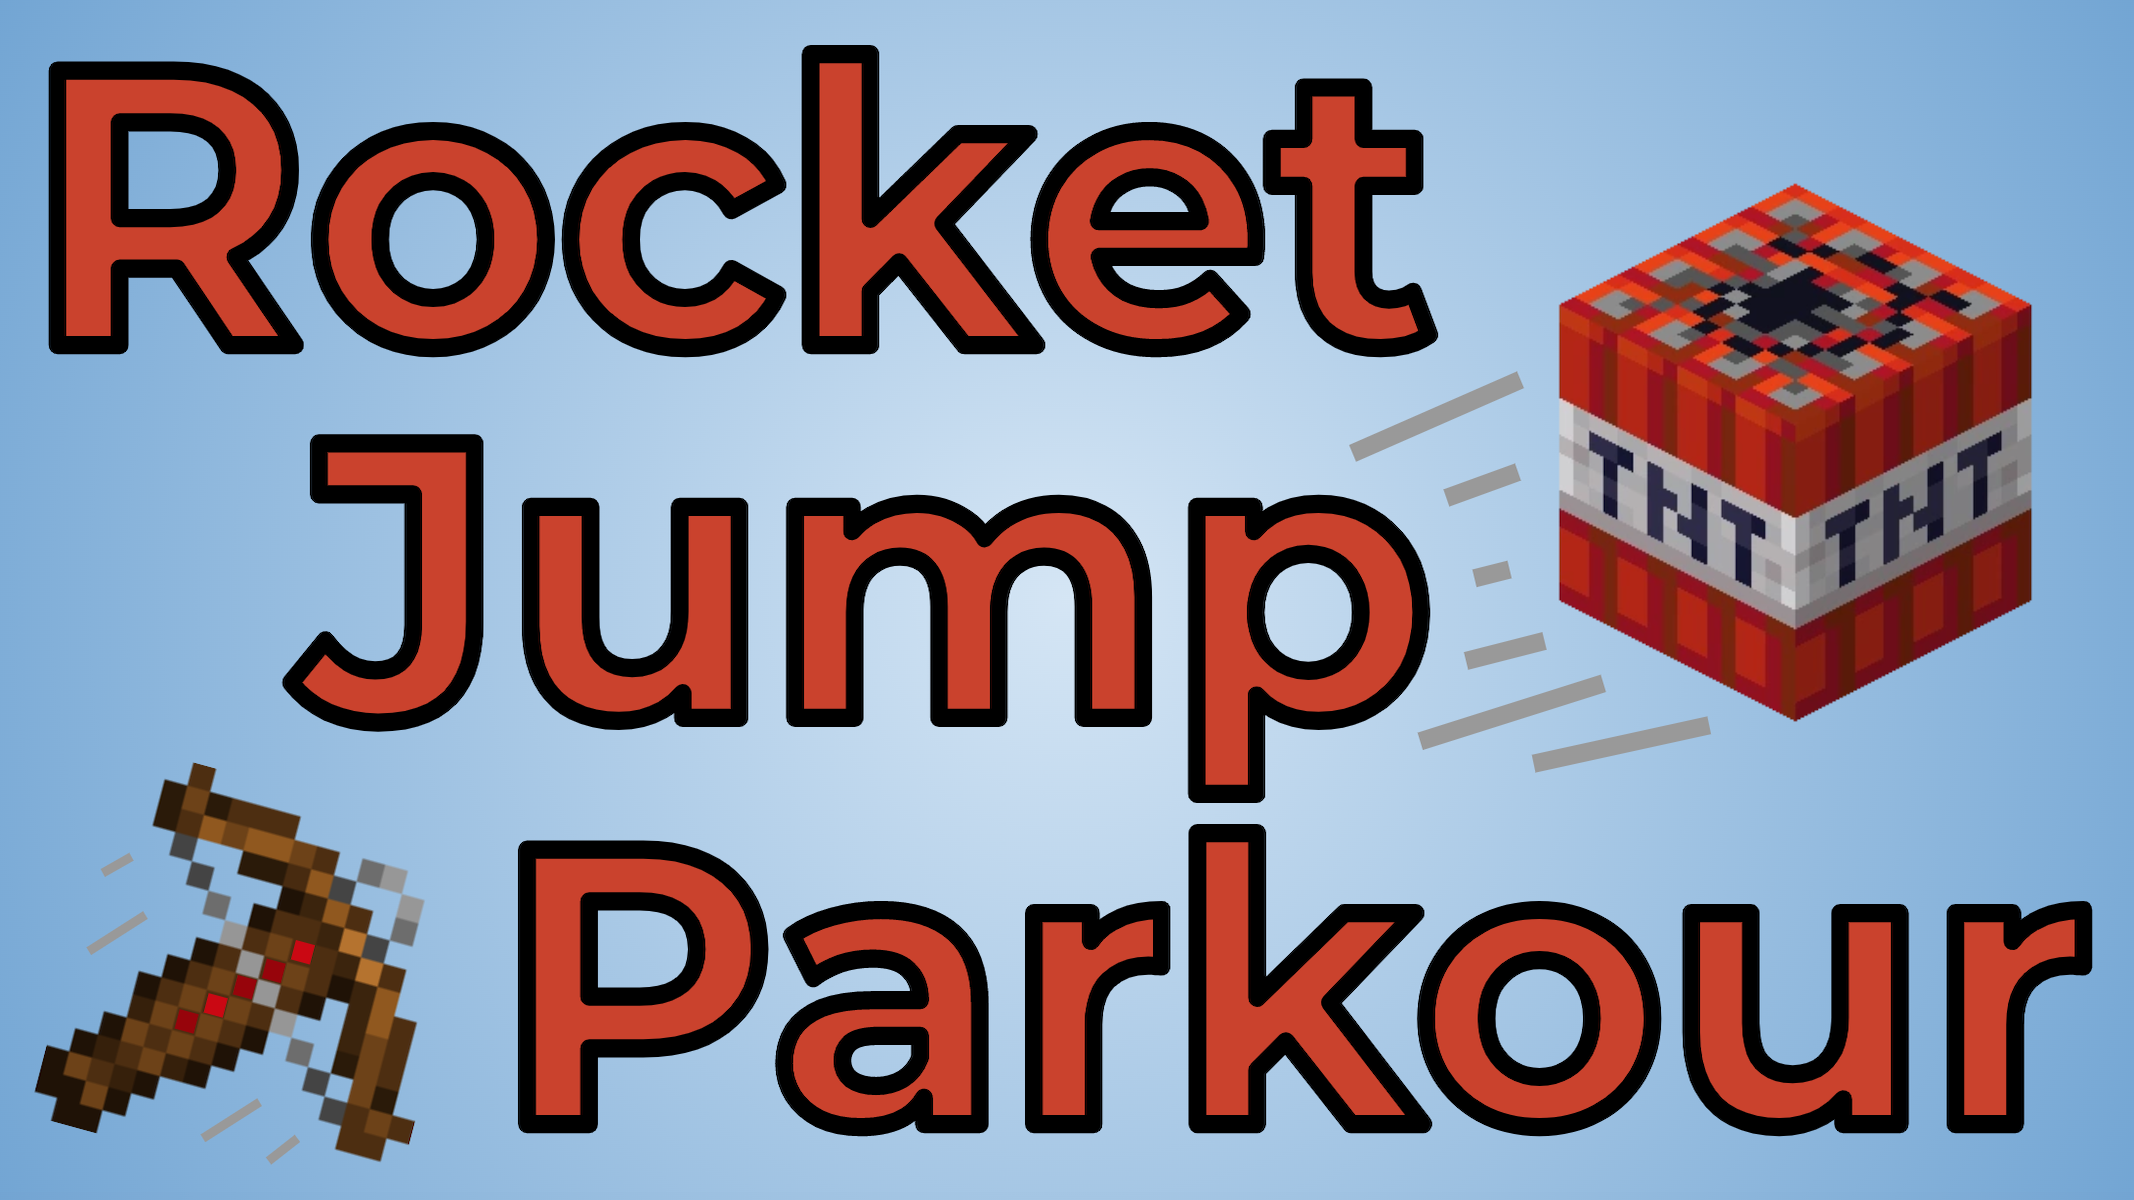 Download Rocket Jump Parkour 1.3 for Minecraft 1.19.2